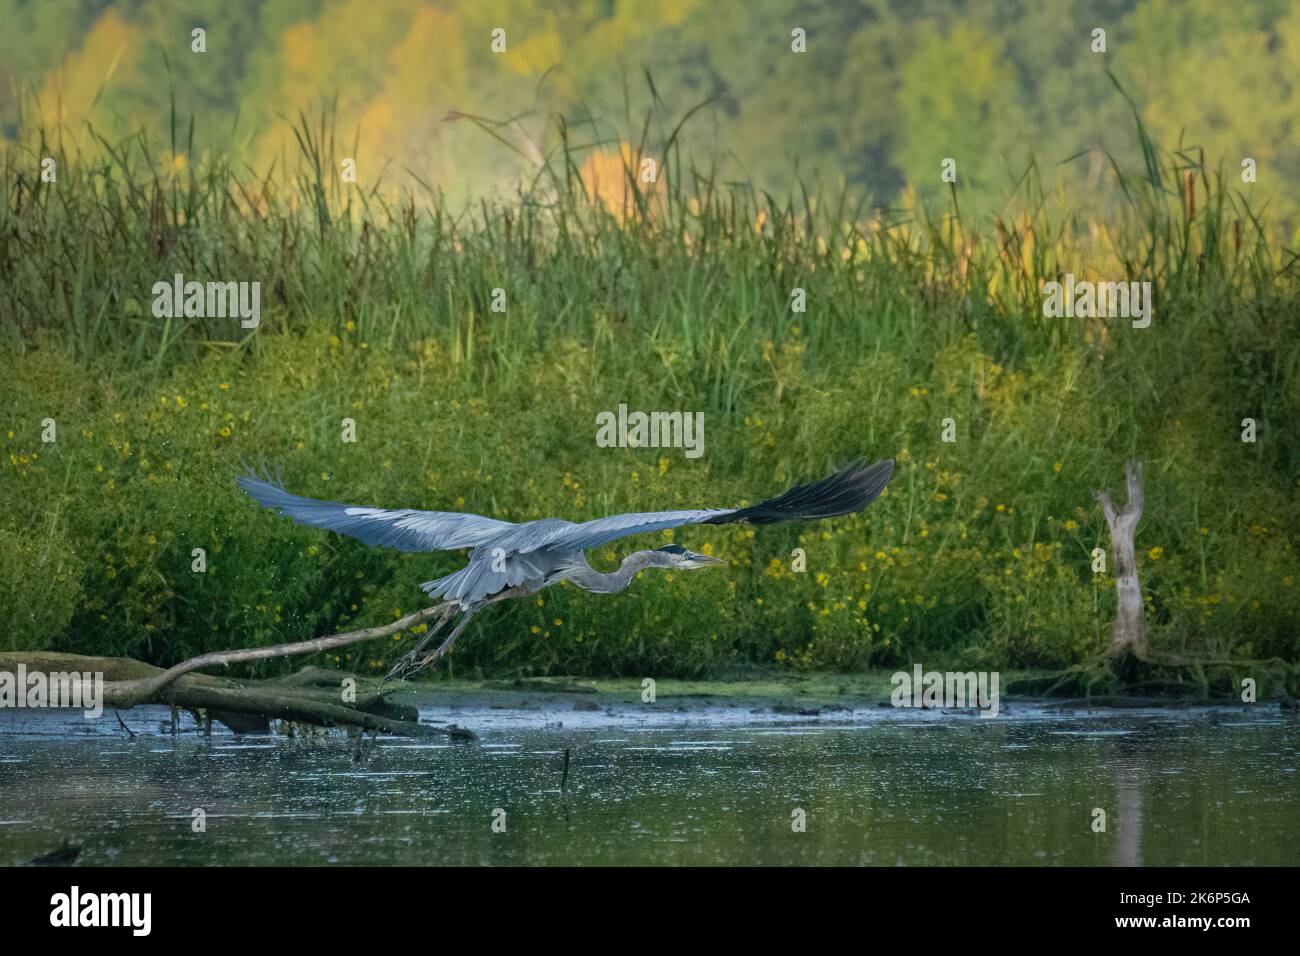 Un grande Heron blu pesca lungo la riva del fiume Kewaunee nella contea di Kewaunee Wisconsin. Queste immagini sono state scattate durante il kayak lungo il fiume. Foto Stock